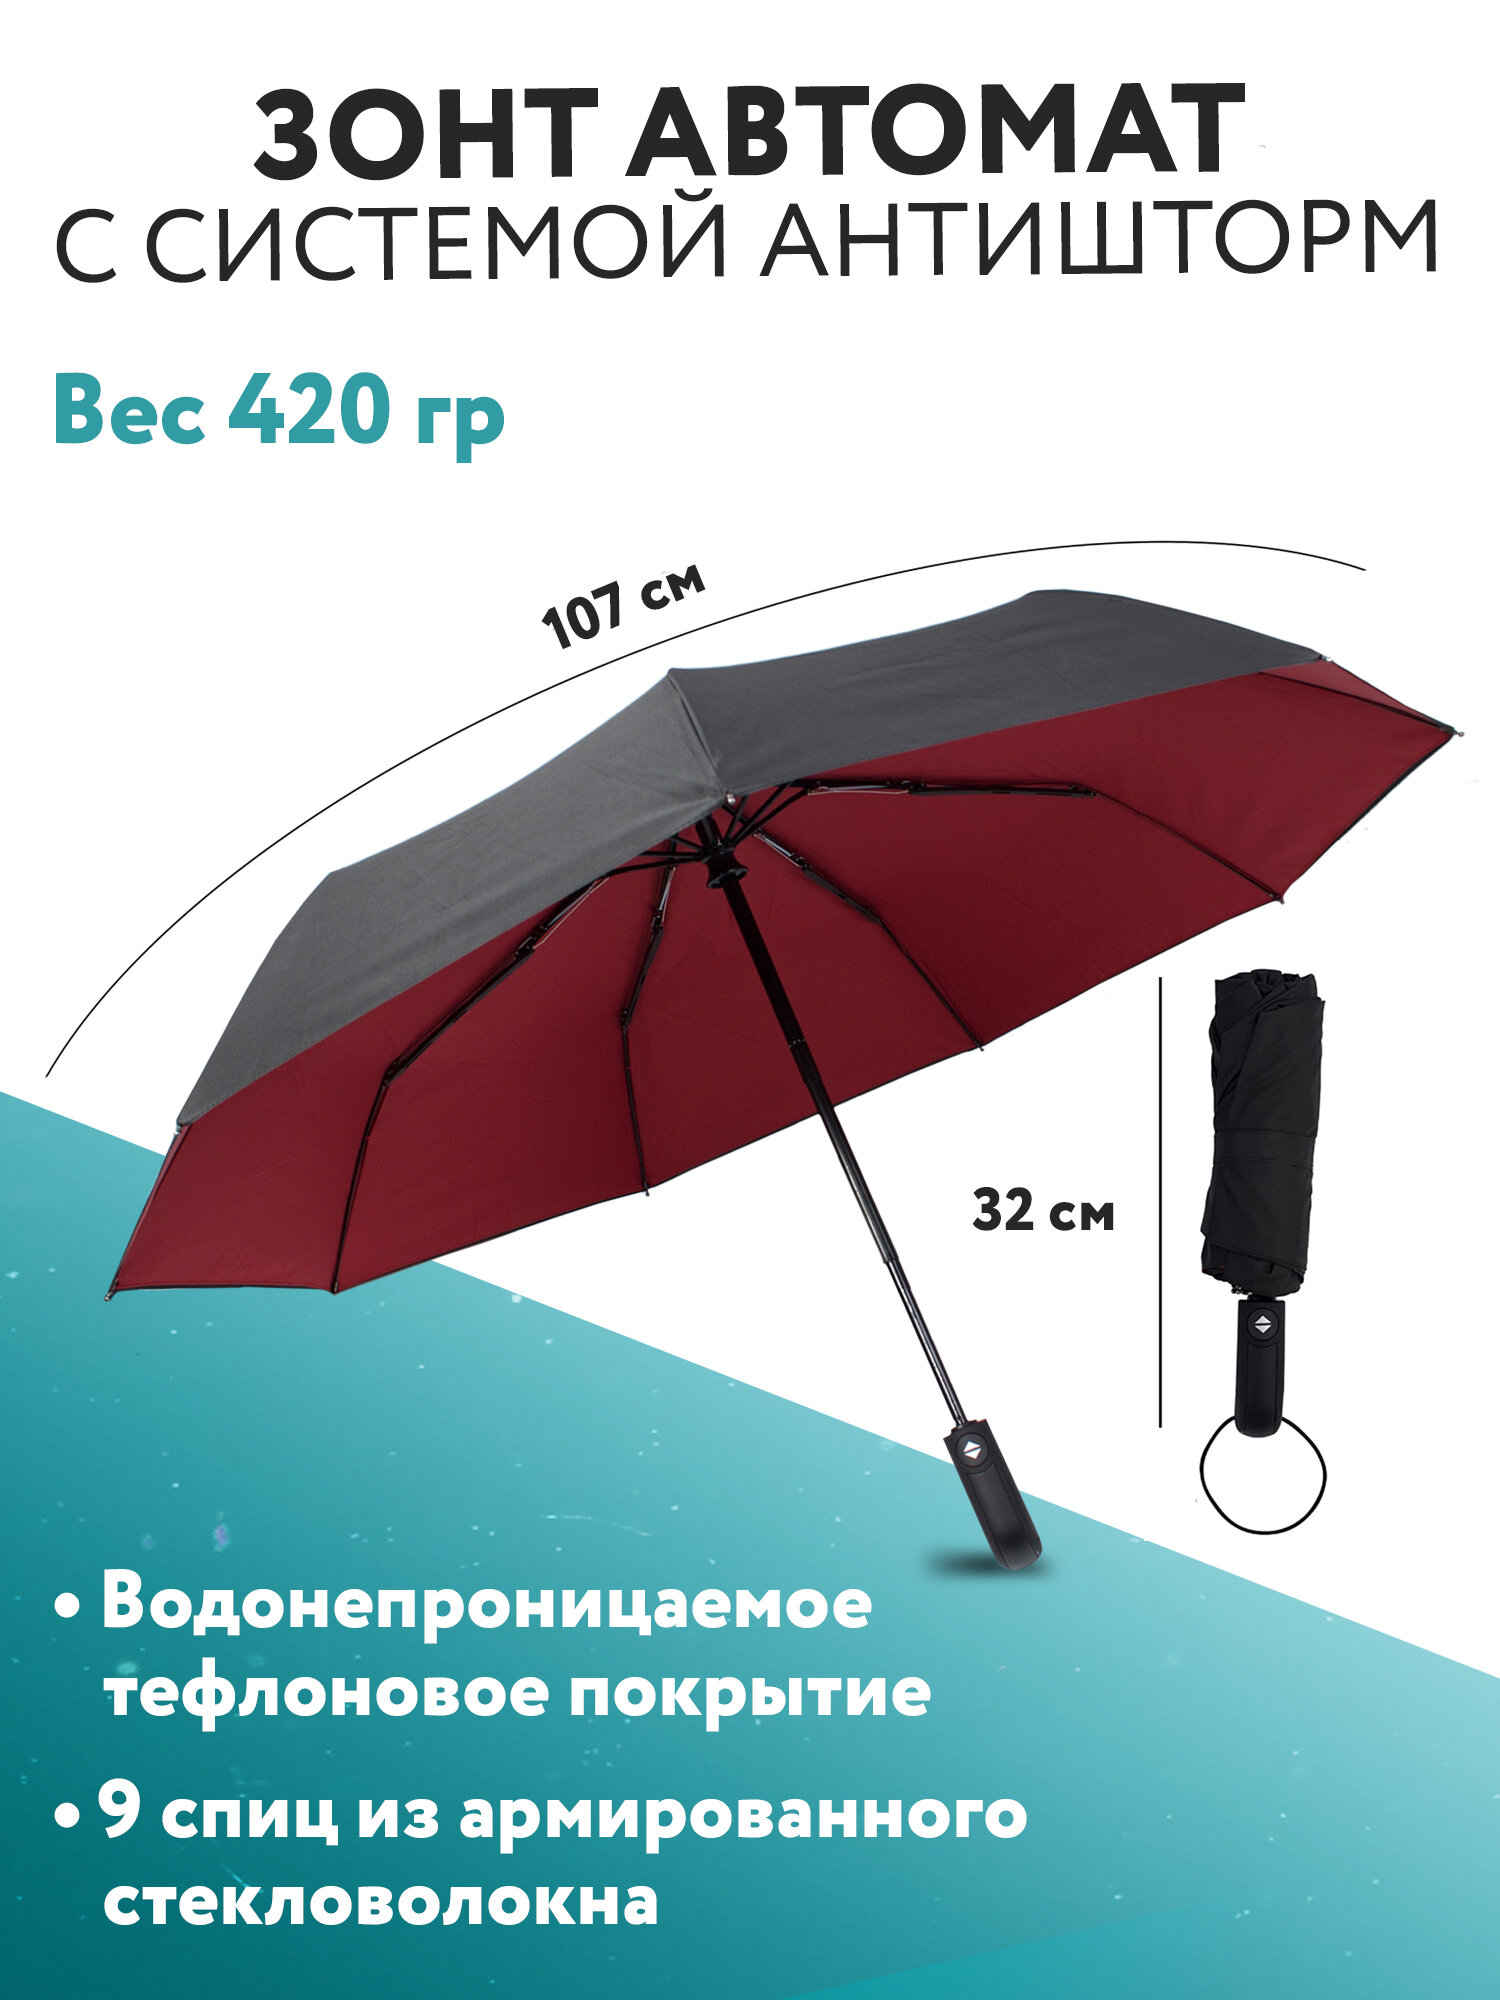 Зонт - автомат антиветер PUREVACY. Ветрозащитный компактный зонт 32см, купол 107см с системой антишторм женский, мужской, легкий автоматический зонт